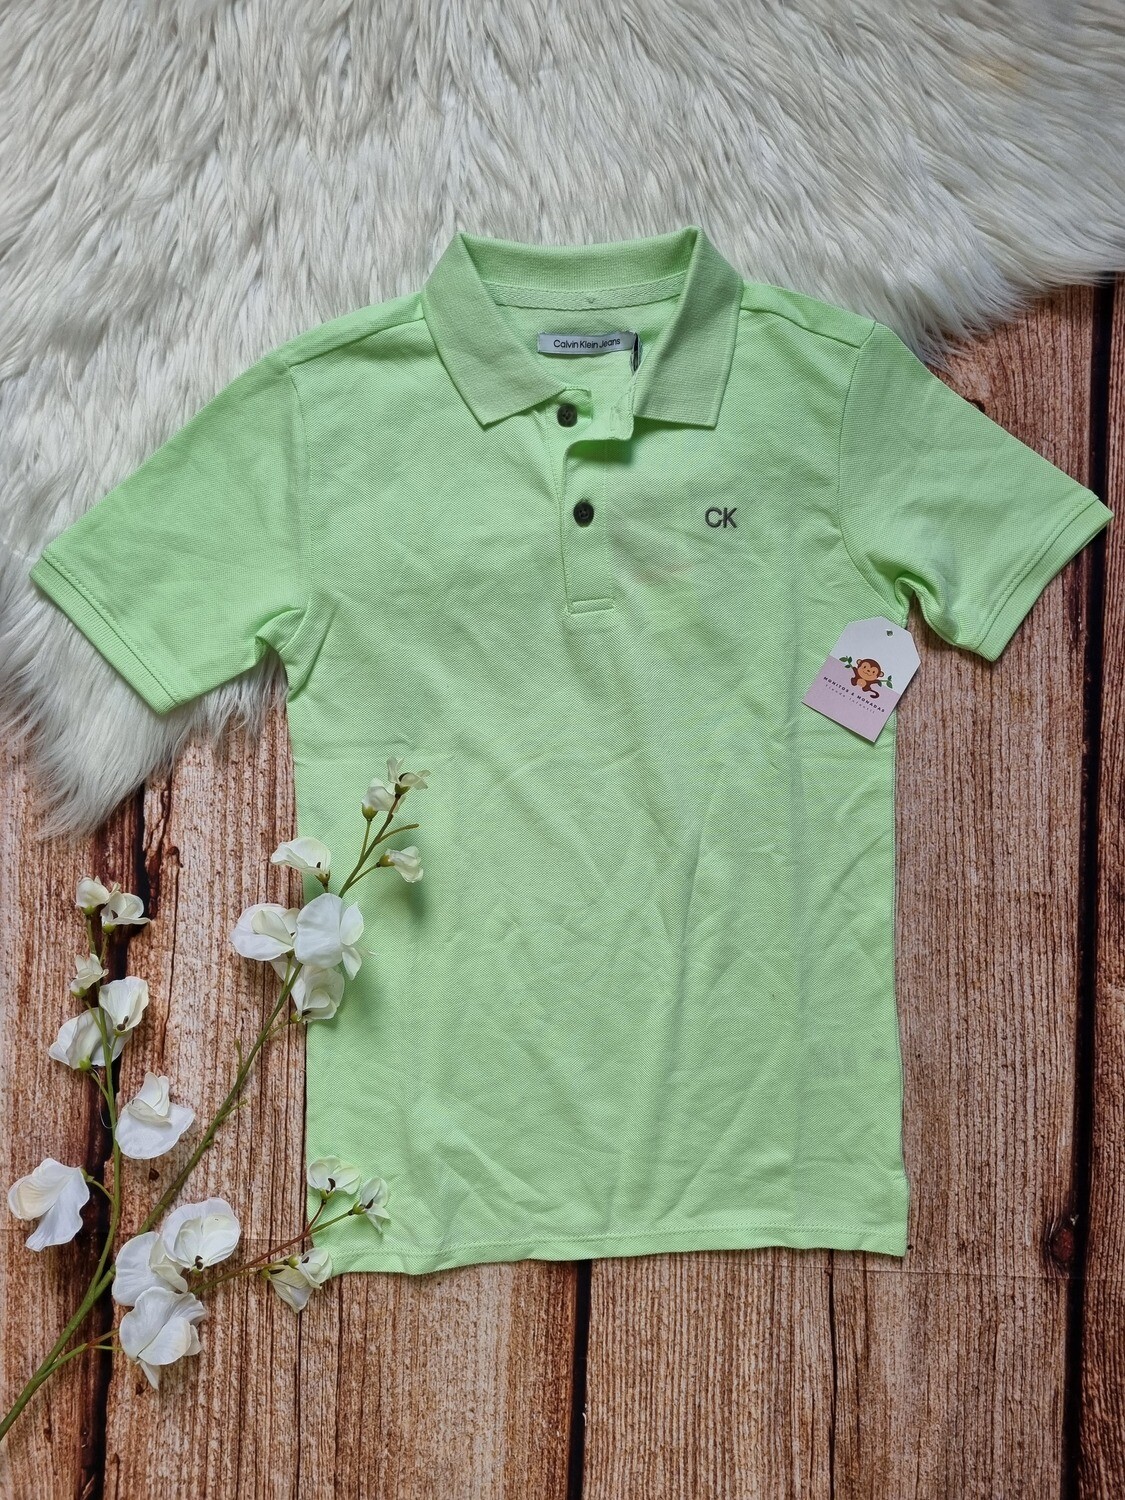 Camiseta verde, tipo polo, Calvin Klein, 5T y 7T